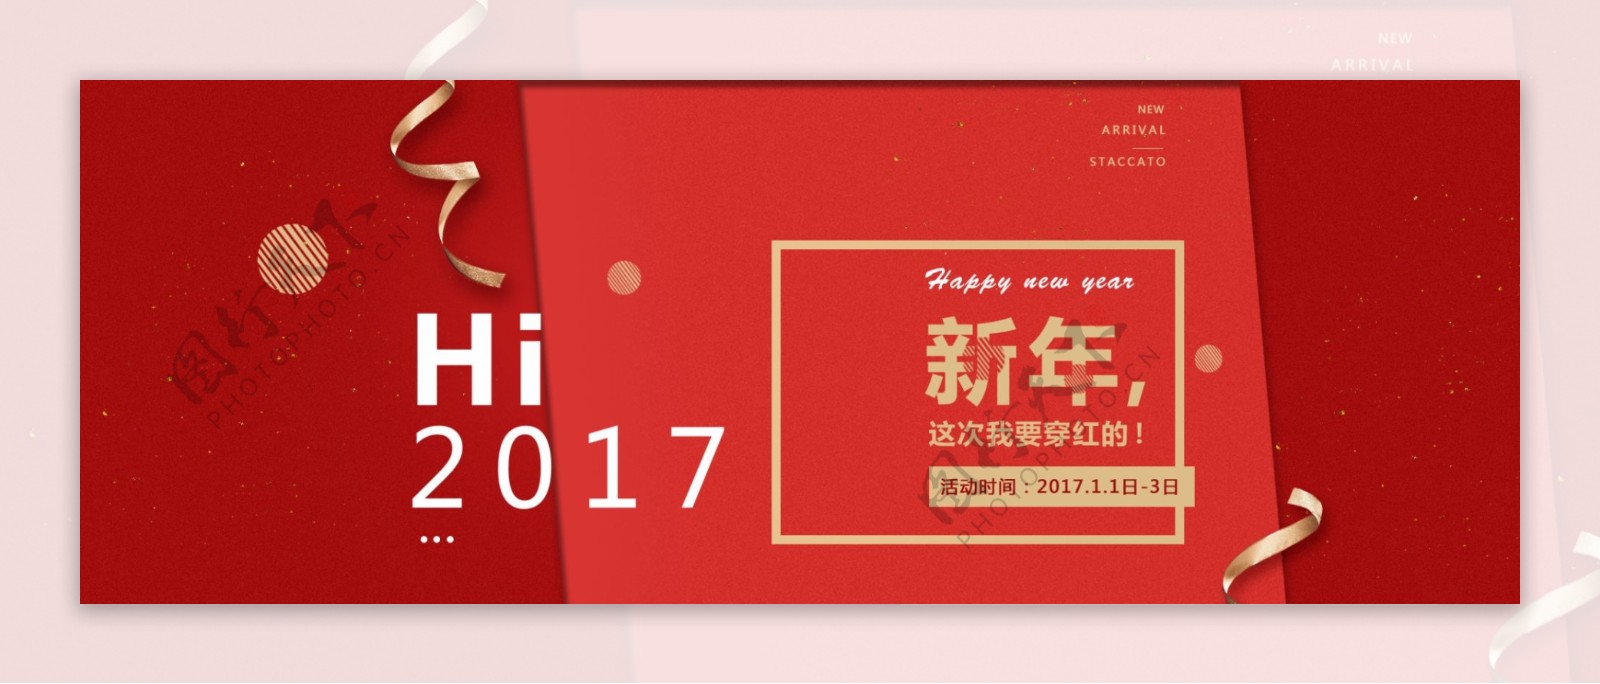 红色淘宝天猫2017新年春节女装活动海报